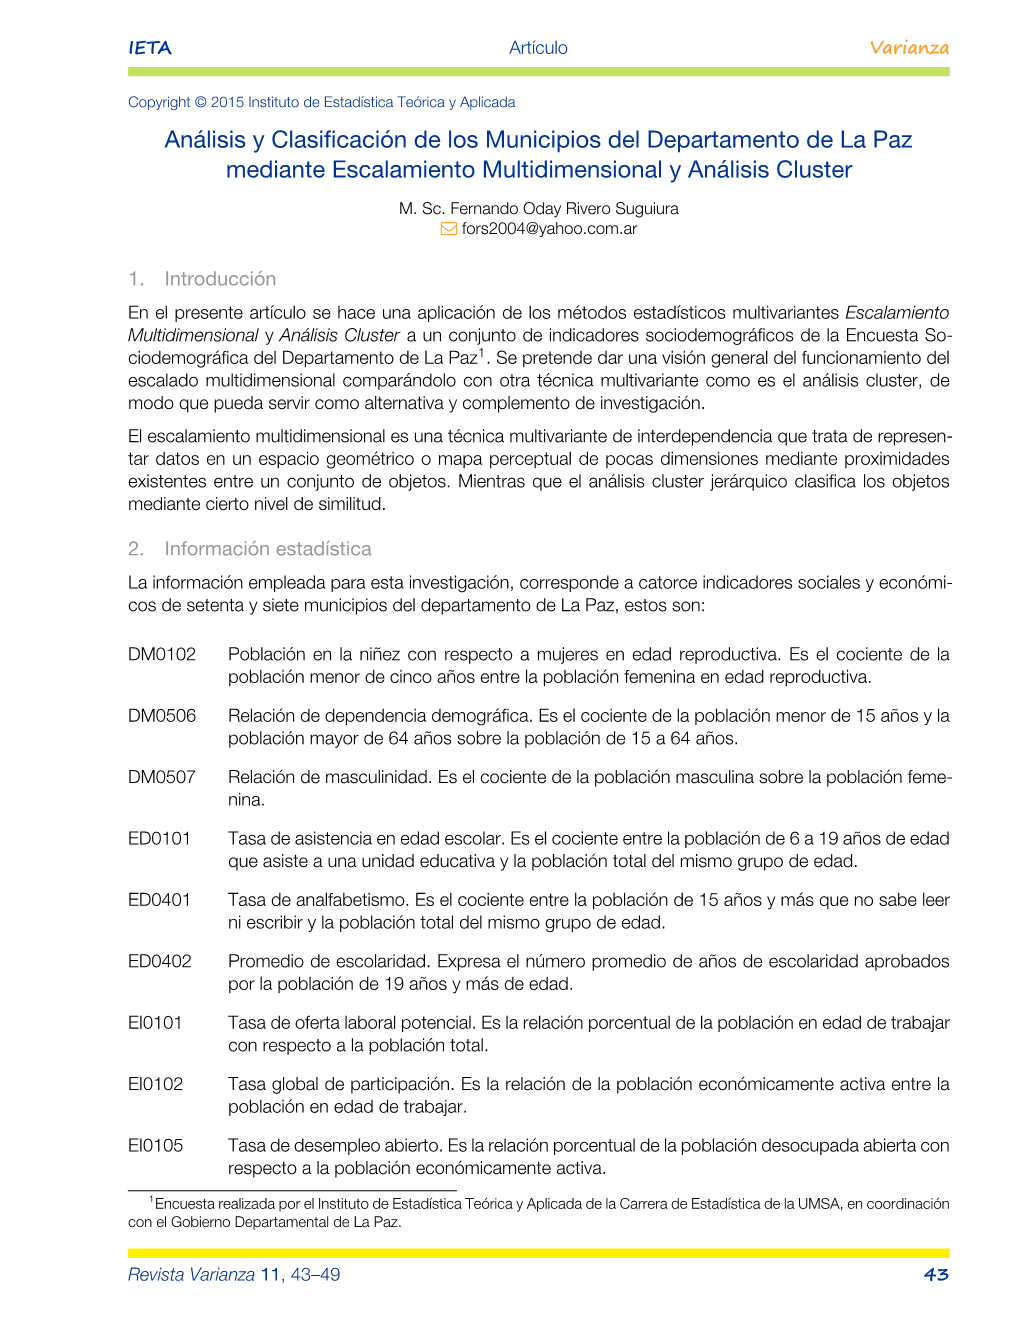 Análisis Y Clasificación De Los Municipios Del Departamento De La Paz Mediante Escalamiento Multidimensional Y Análisis Cluster